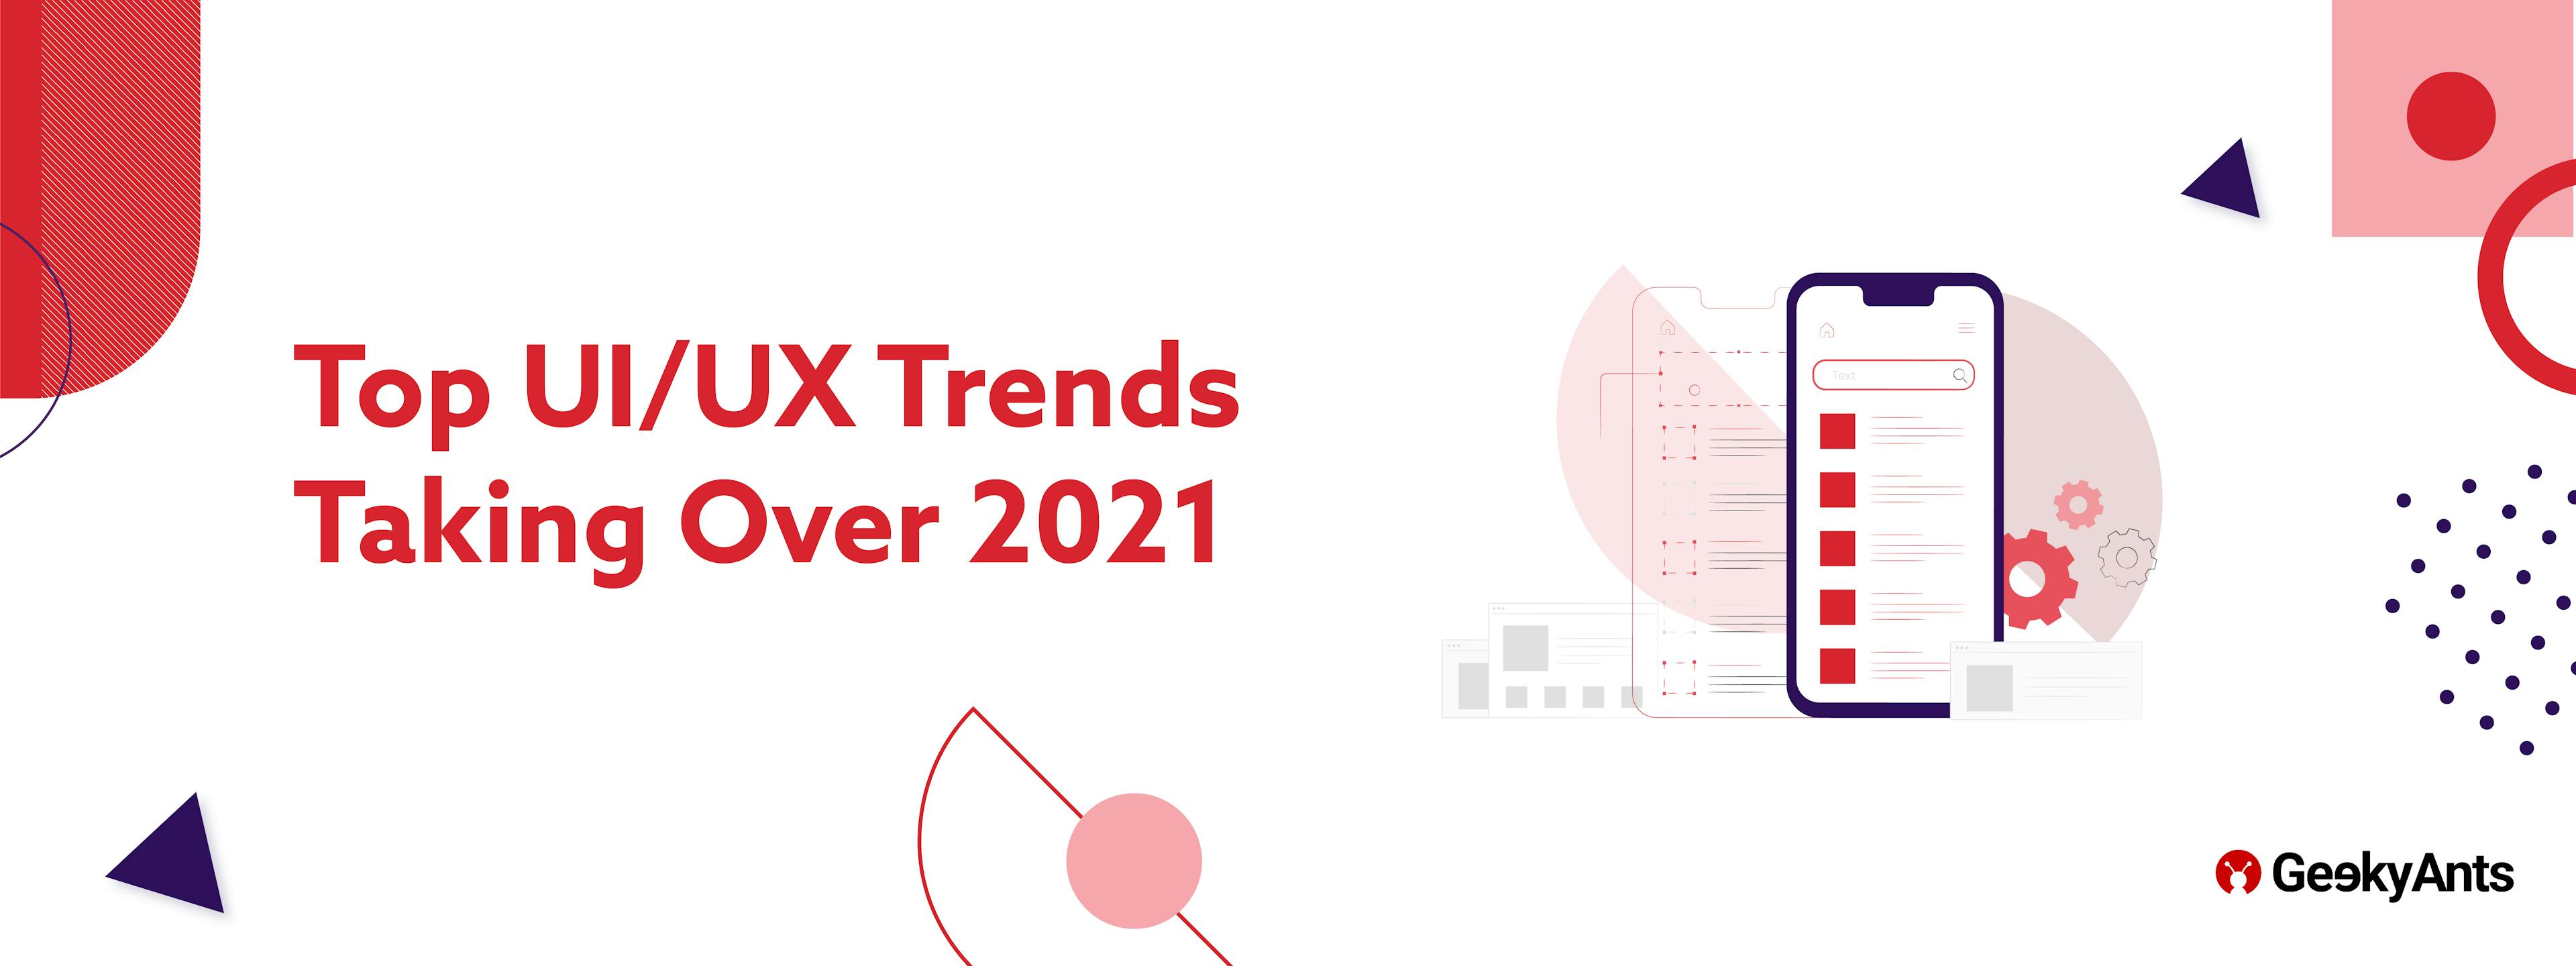 Top UI/UX Trends Taking Over 2021